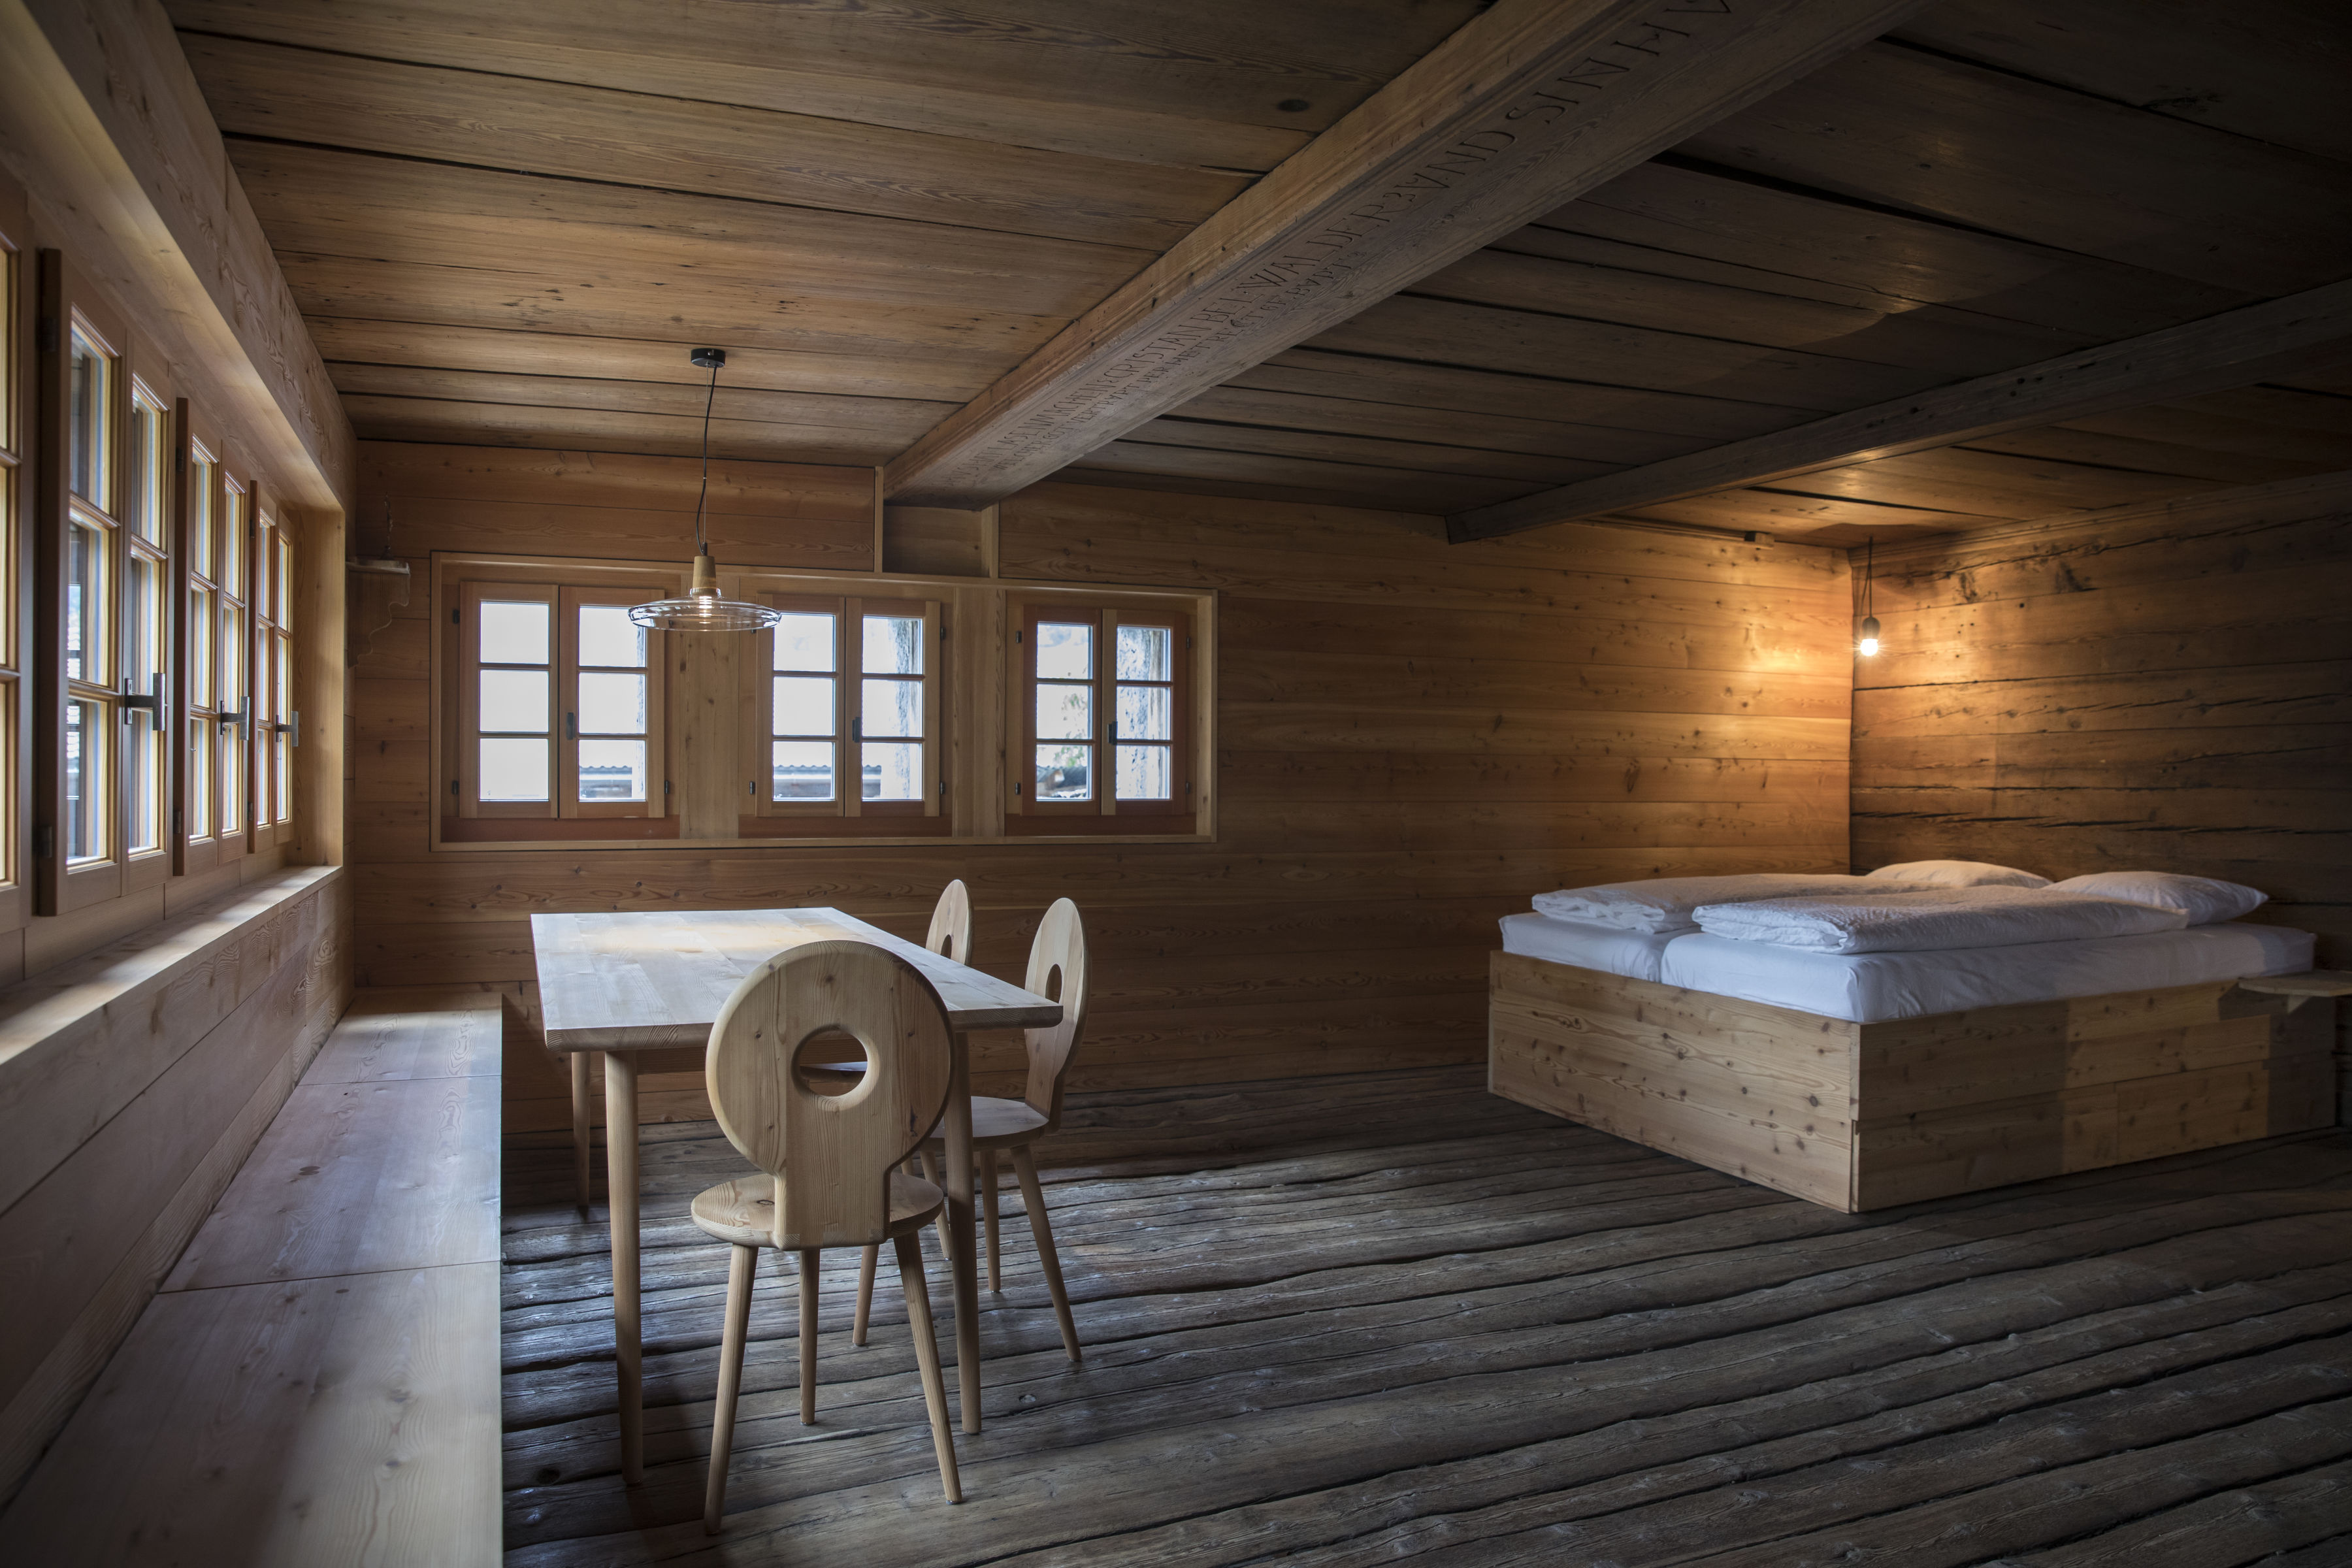 Renoviertes Chalet mit Bett, Stühlen und Holztisch Walliser Möbel Valais Wallis Schweiz Switzerland Suisse